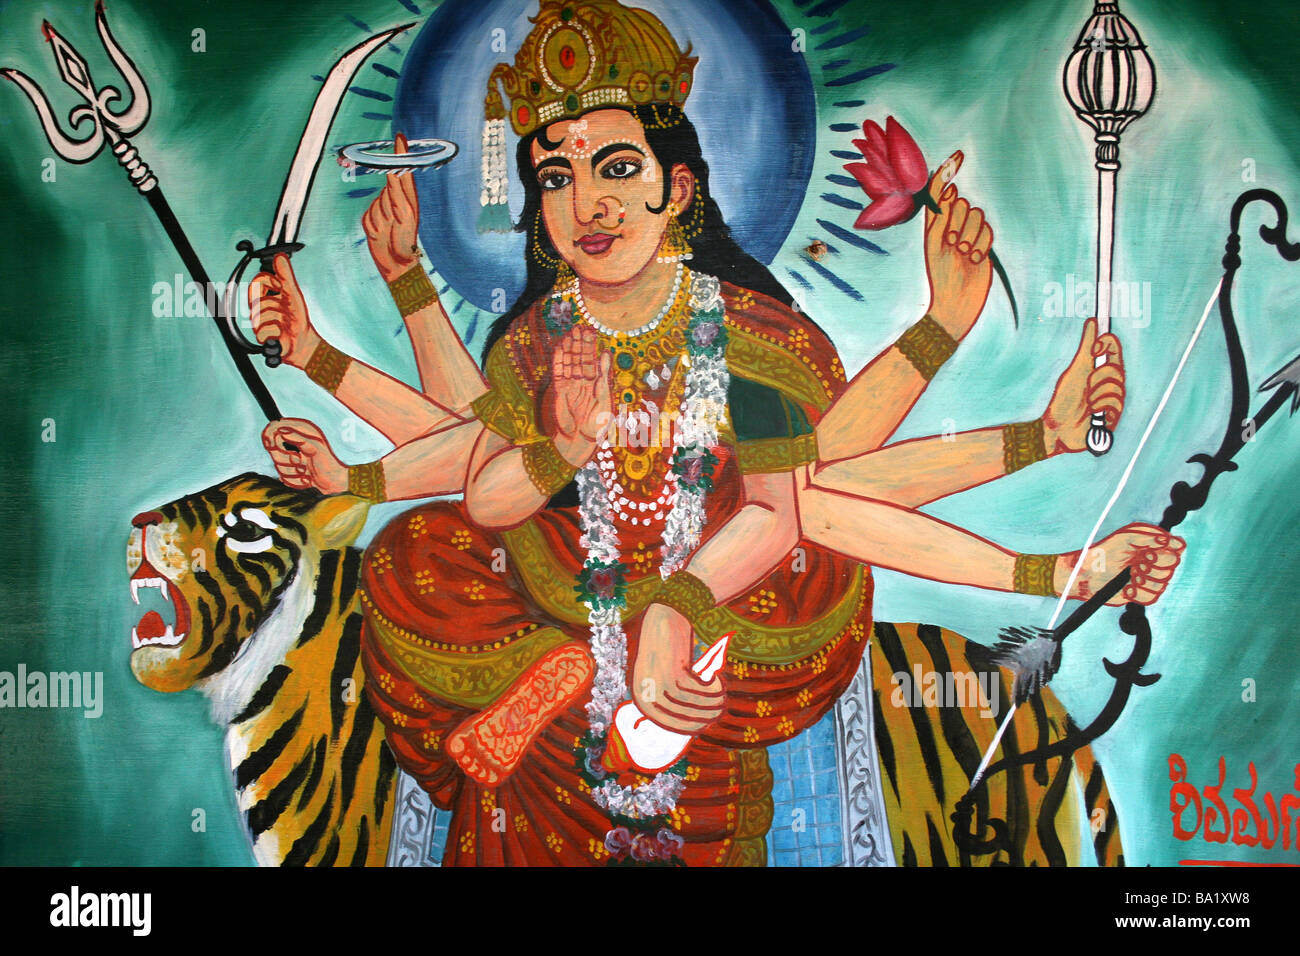 Farbenfrohe Gemälde der Hindu-Göttin Durga reitet ein Tiger Stockfoto